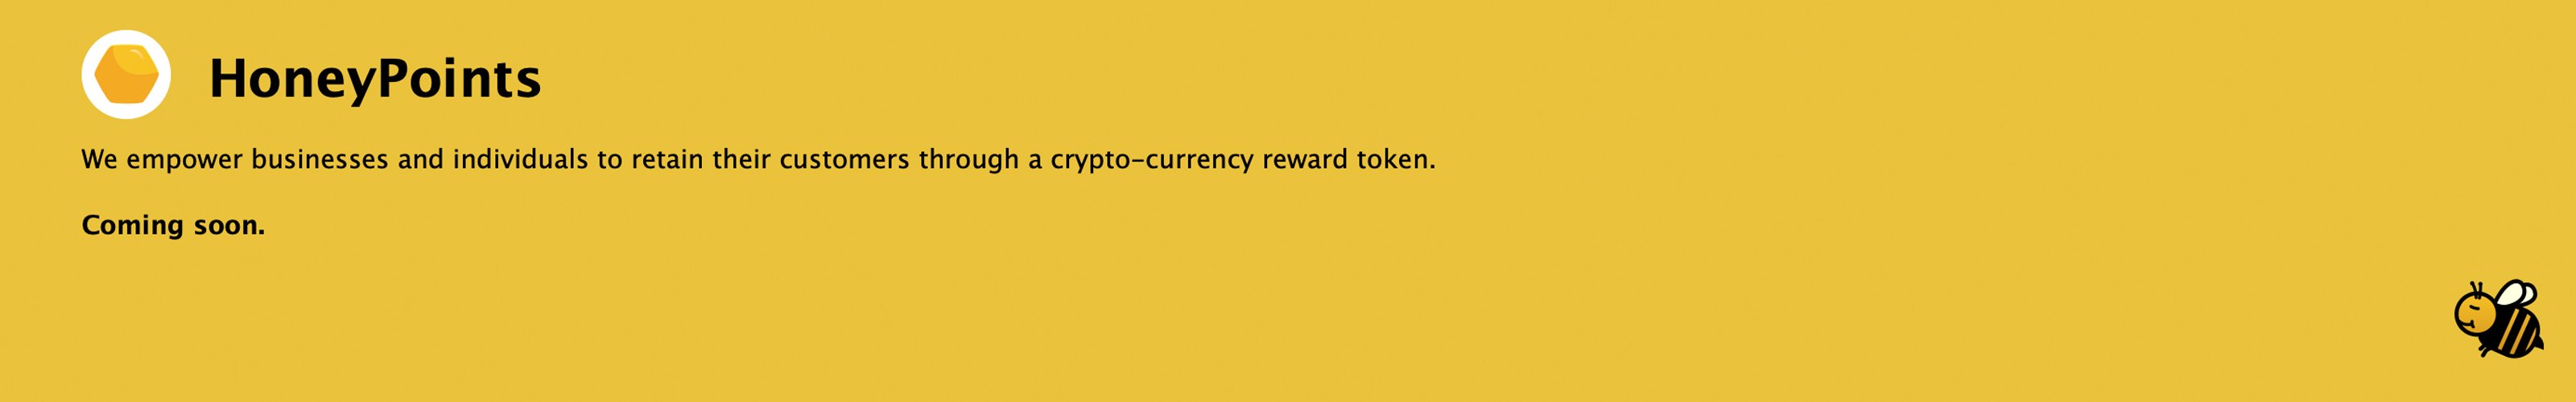 Developer Reveals Token Reward Platform Fueled by Bitcoin Cash